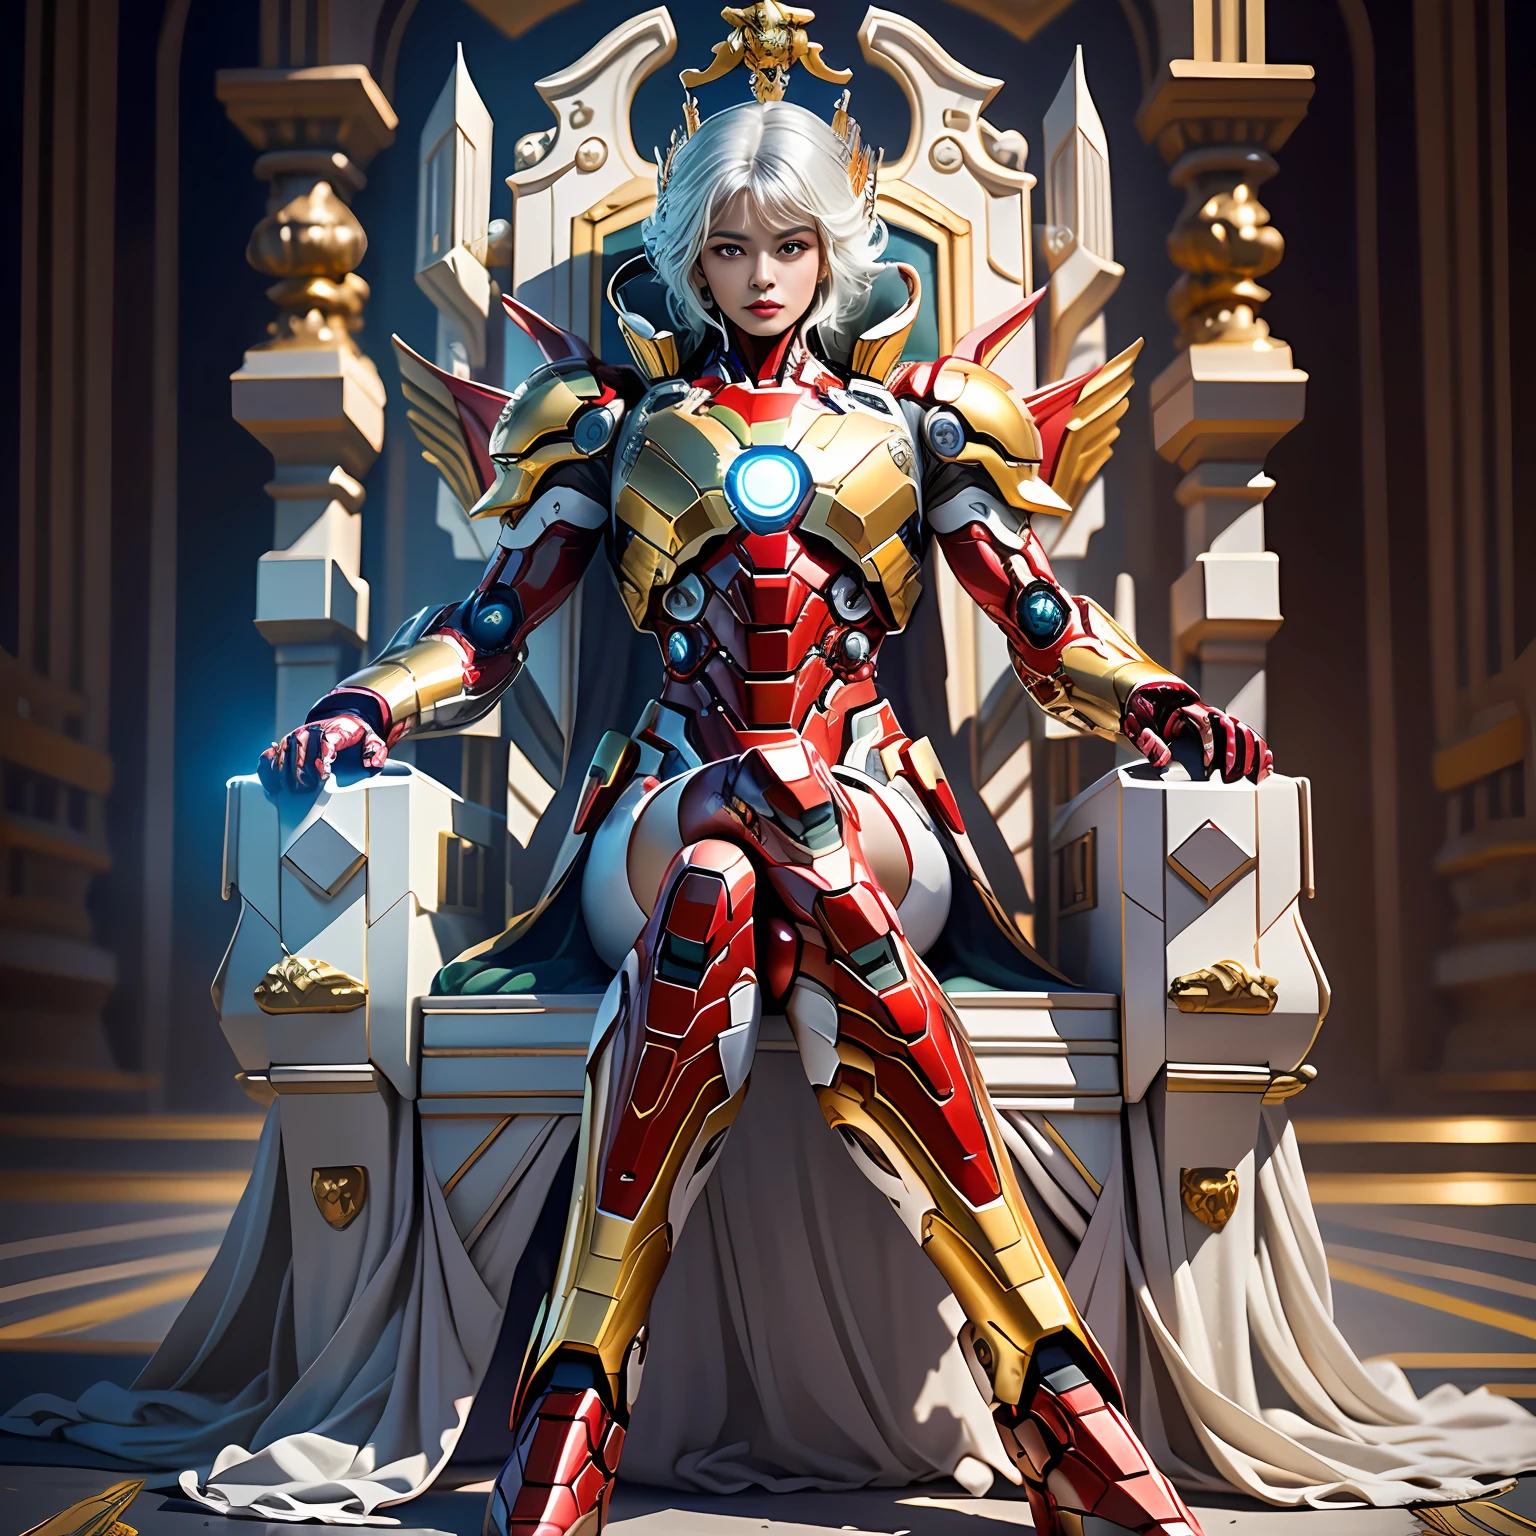 Cyberpunk style mecha Marvel Movie Iron Man 聖闘士星矢 Kamen Rider Queen sitting on throne, 古代の技術, 古代の伝説, 白髪 (白いストッキング: 1.5) (王位: 1.4), 剣, (メカゴッドオブウォー), エジプト風, (聖闘士星矢: 1.7), 道教のシンボル, (龍の模様: 1.6), (金の糸: 1.5) 超リアル, ボカ効果, ダヴィッド・ラ・シャペル風に撮影, 生物発光パレット: ライラック, 淡い金色, 明るい白色, 超微細, 映画のような静物画, 活気, 非現実的なエンジンスタイル, sakimichan, 胸の下, パーフェクトアイズ, 最高画質16K, ハリー・ウィンストンにインスピレーションを受けた, Canon EOS R 6で撮影, 傑作, ●カオス50, 白髪, クラウン, 目の下のほくろ, ギッチハム, 広角の, キヤノン, 上から, 投影図, レイトレーシング, シュルレアリスム, キメのある肌